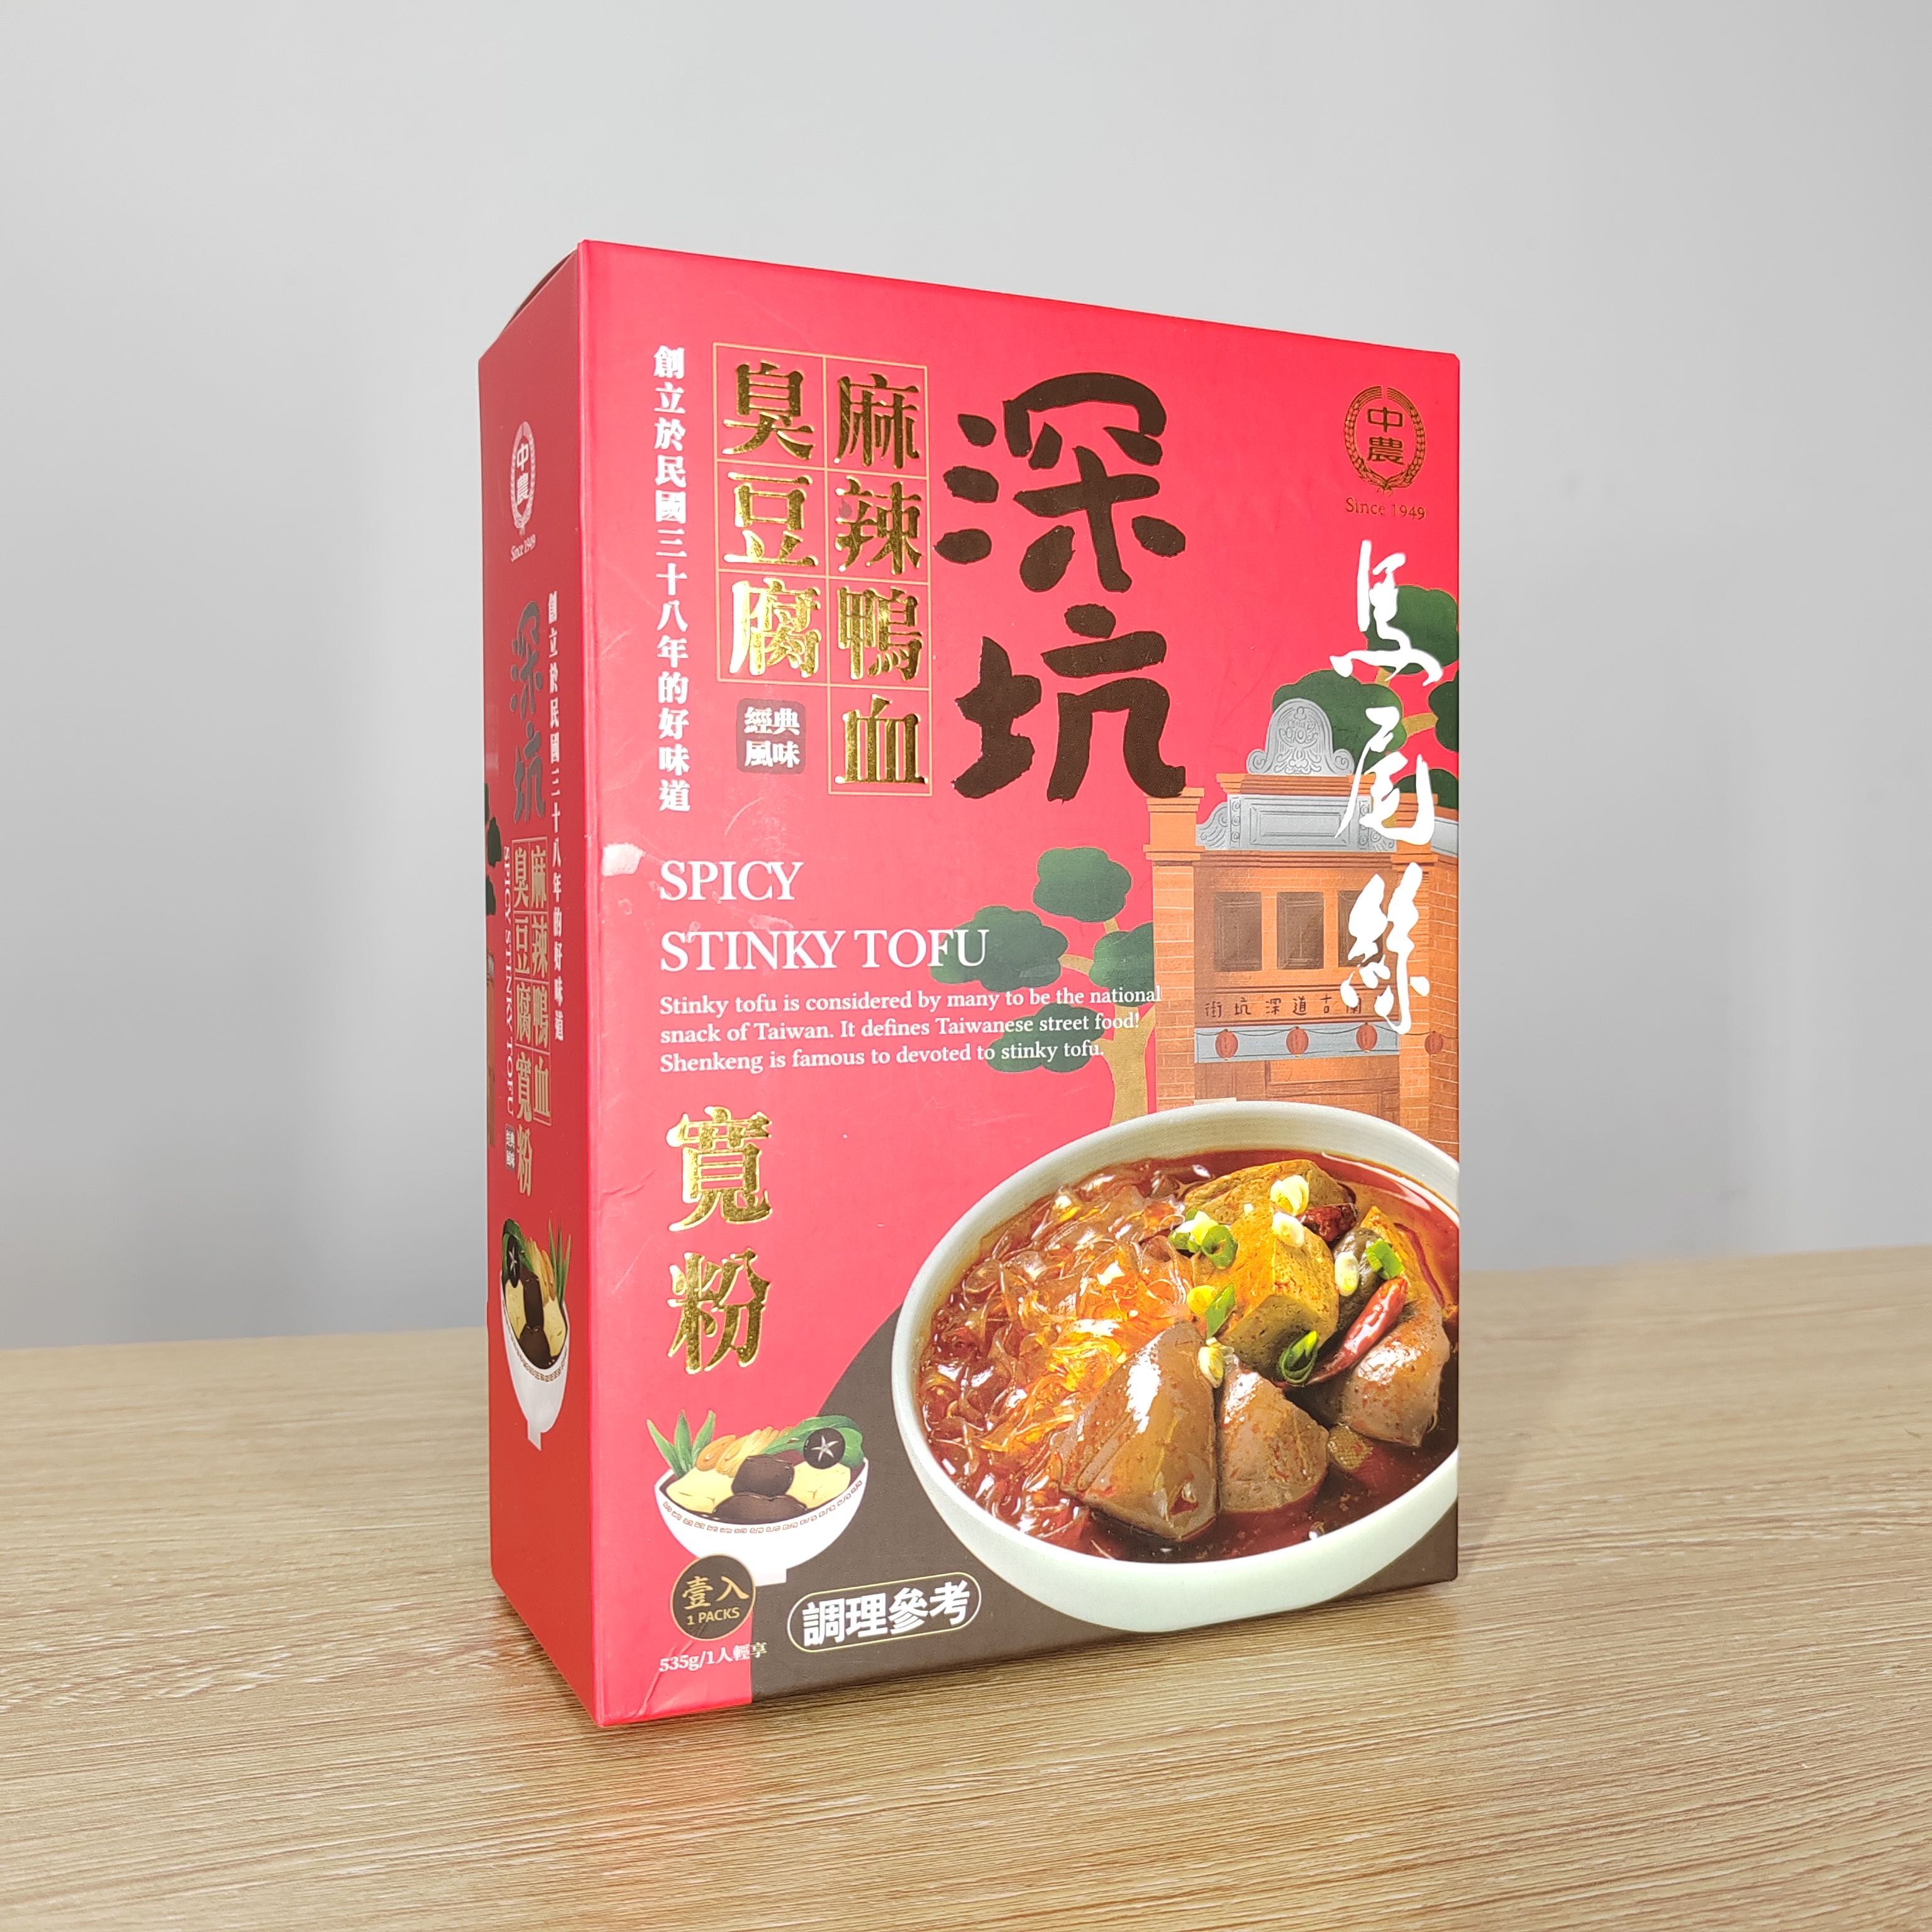 台湾马尾丝深坑麻辣鸭血臭豆腐宽粉火锅经典风味535g/盒原产煮粉